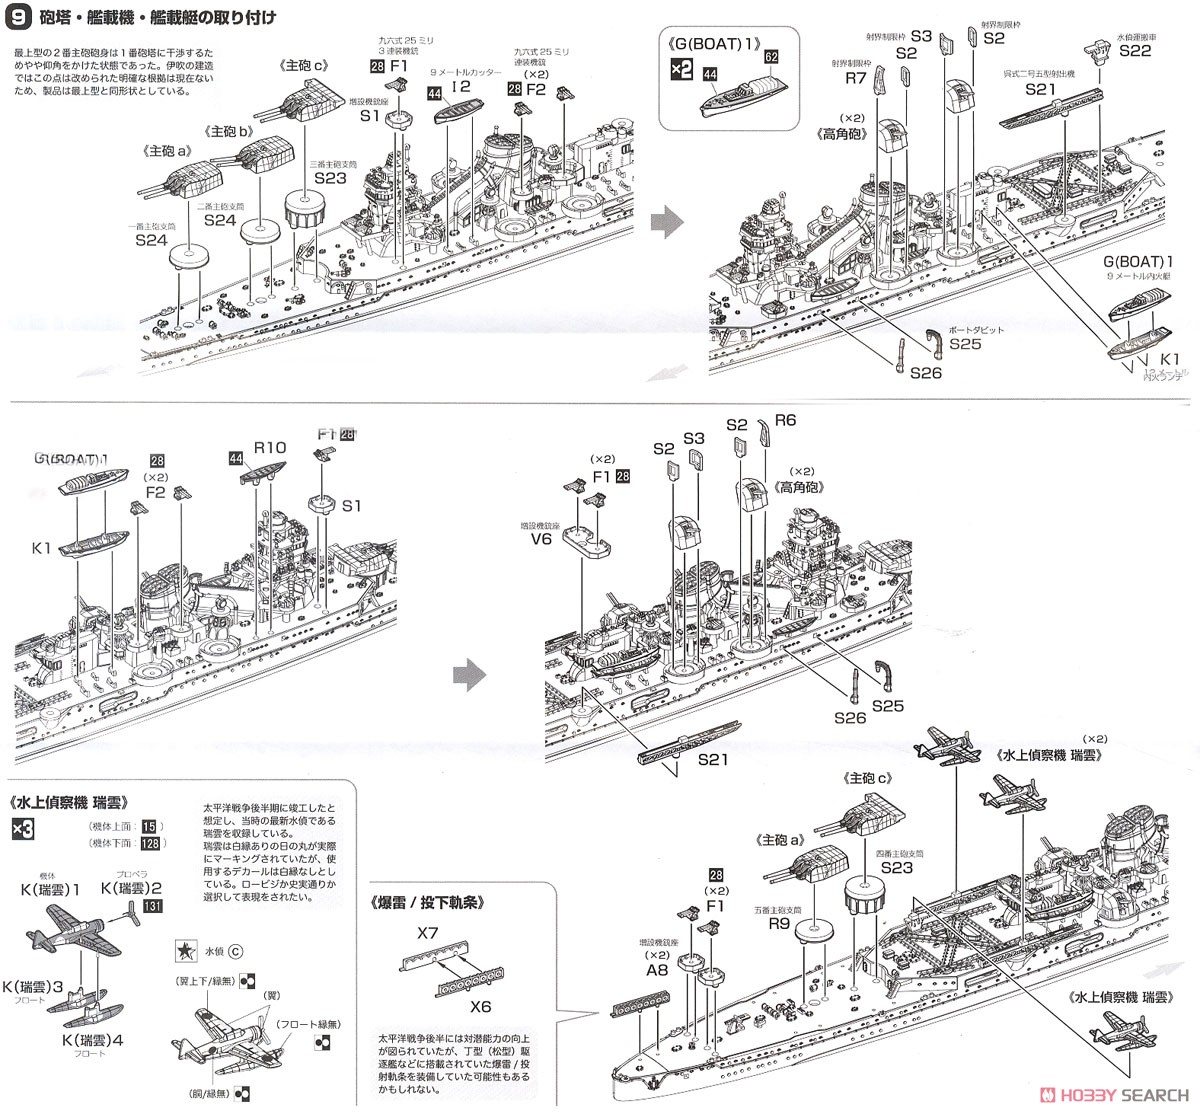 日本海軍重巡洋艦 伊吹 (プラモデル) 設計図5